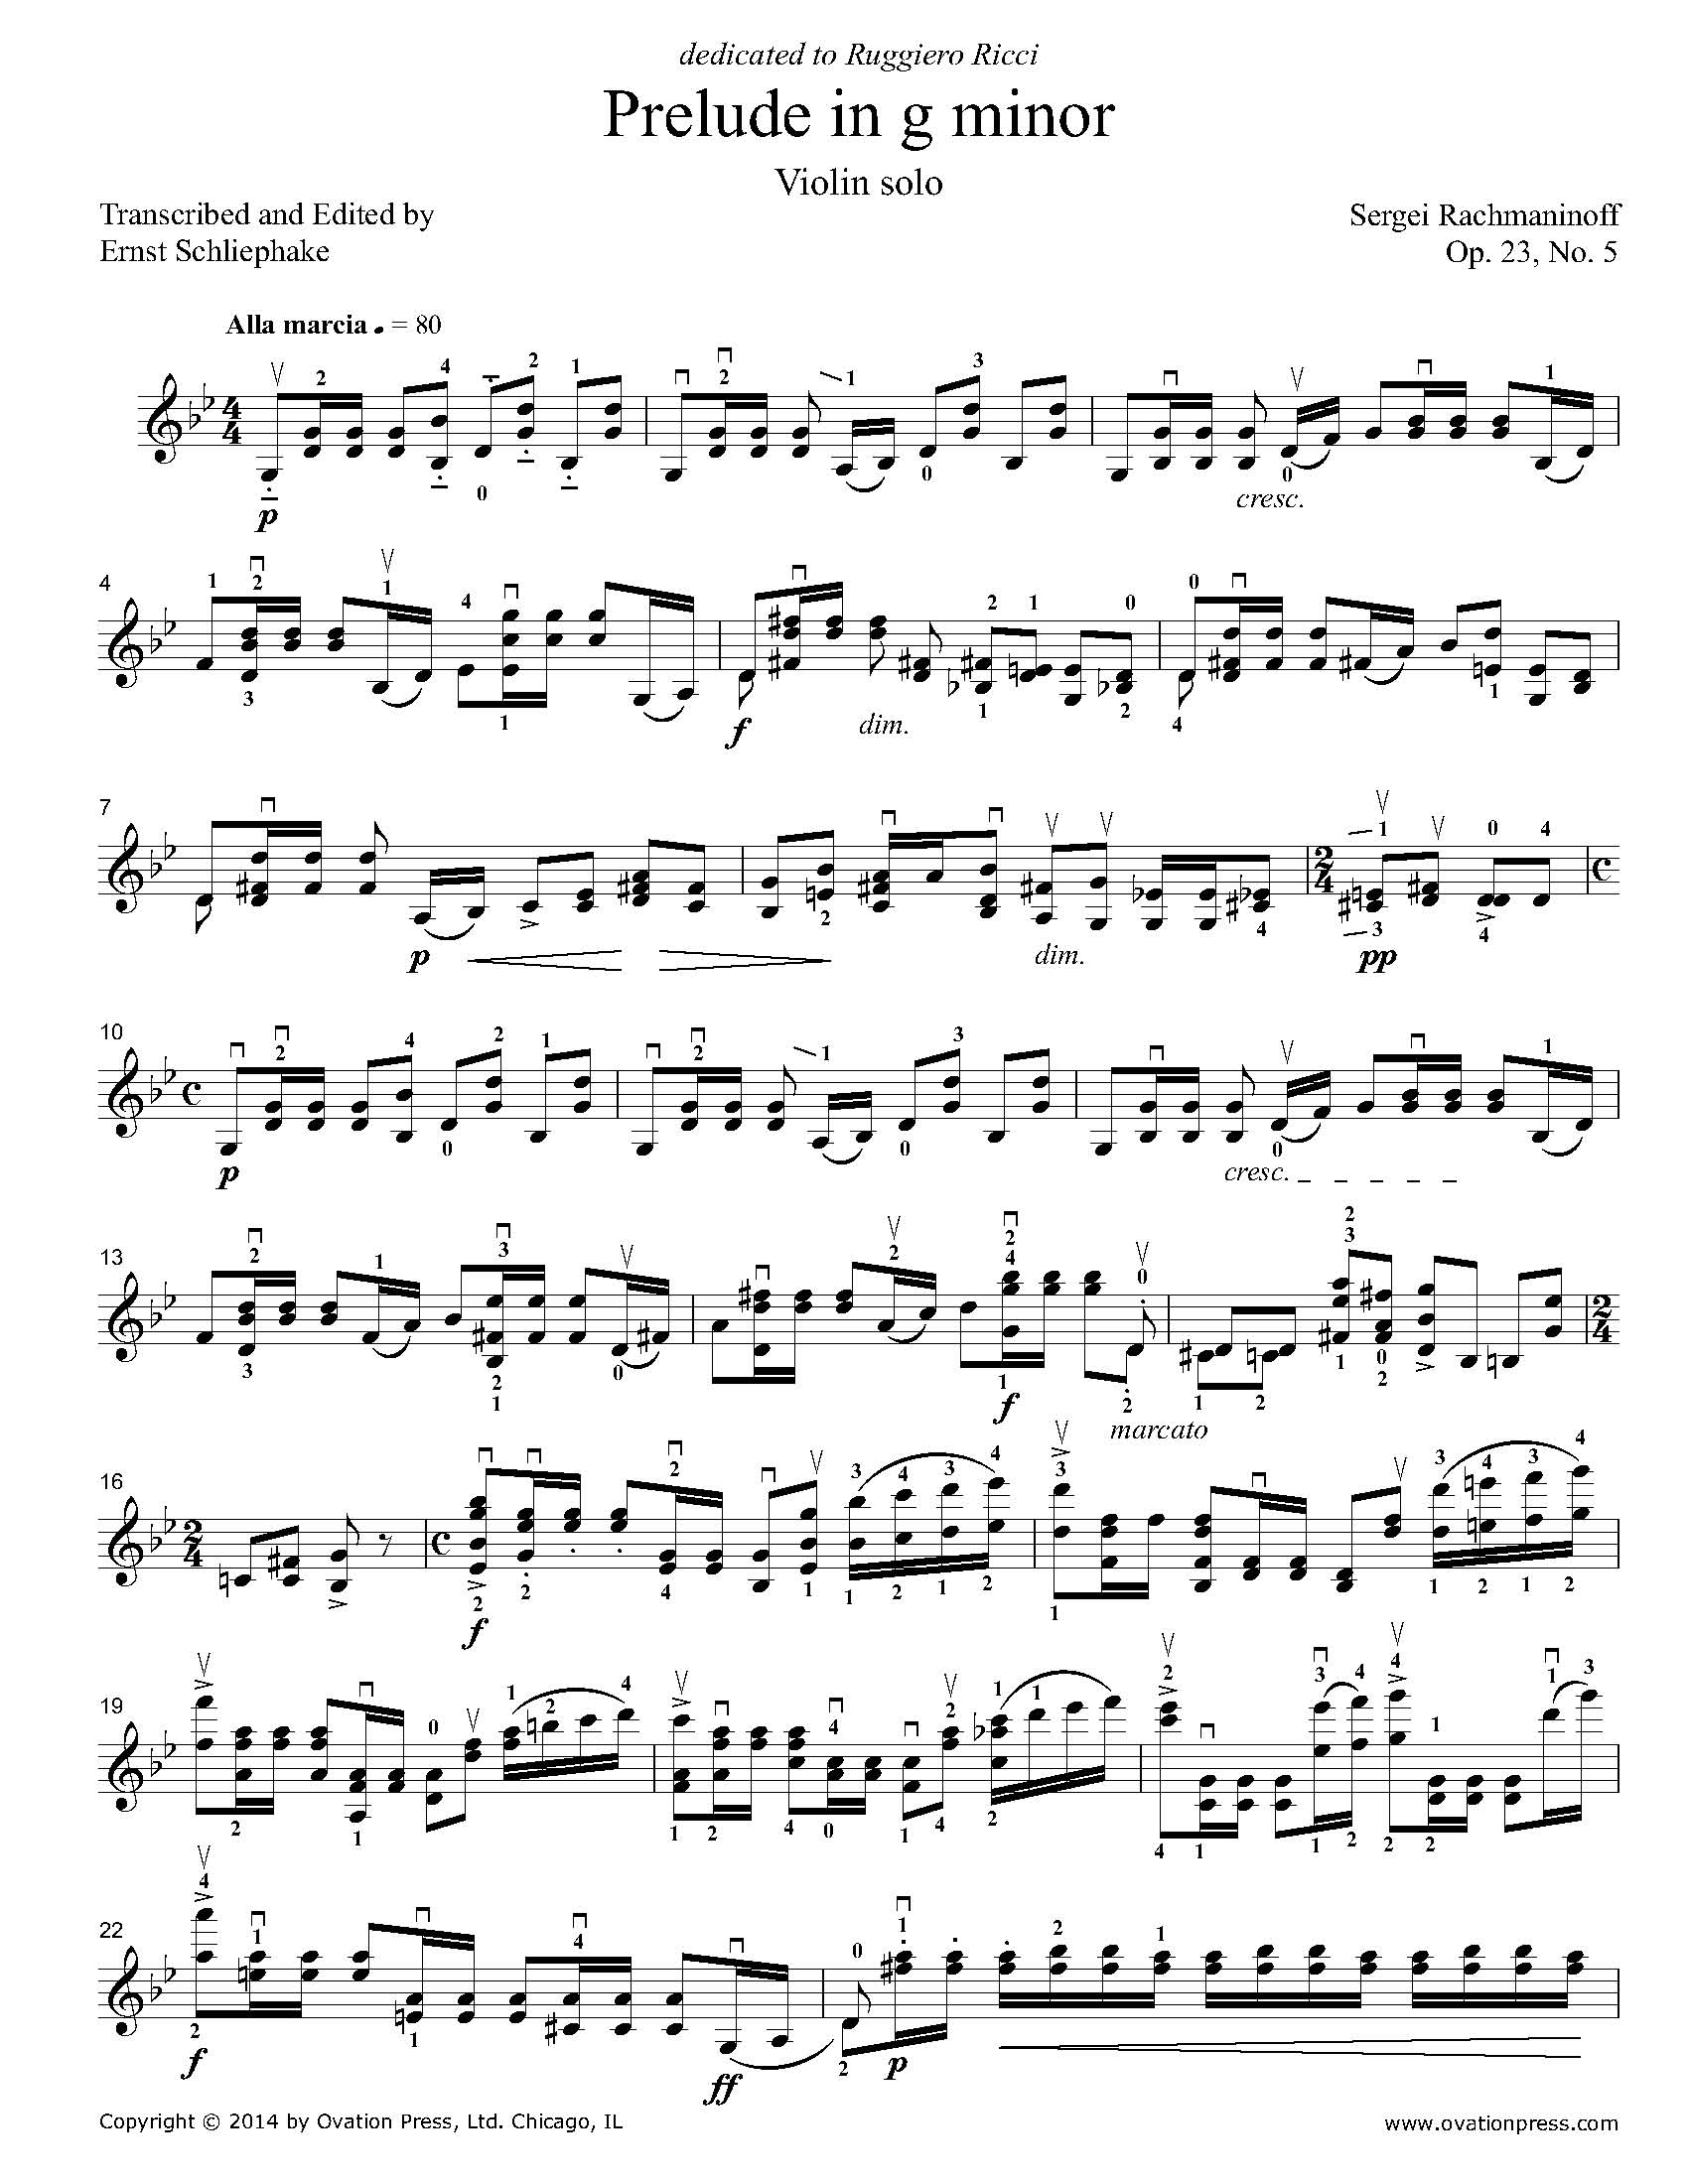 Rachmaninoff Prelude in g minor Op. 23, No. 5